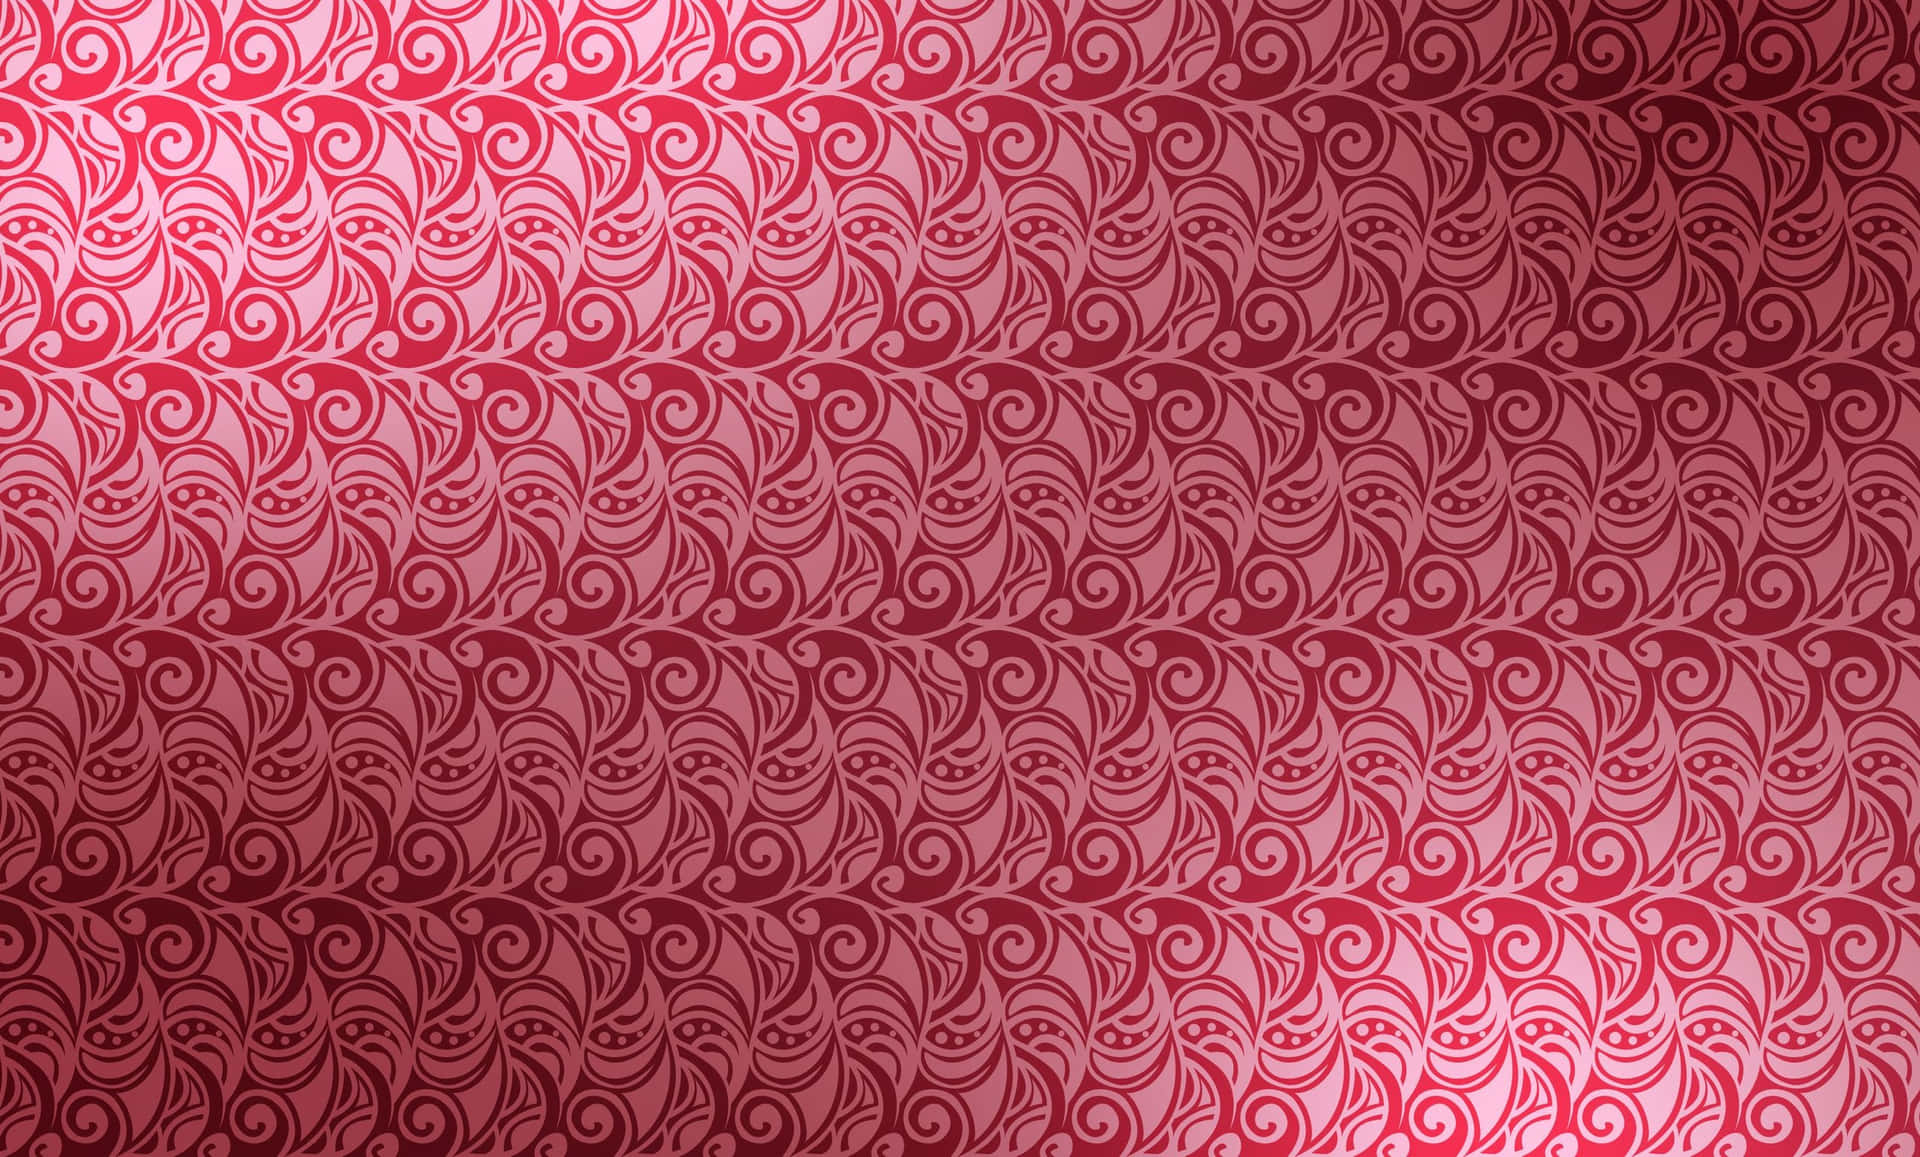 Unfondo De Pantalla Con Patrón De Espiral Rojo Y Blanco